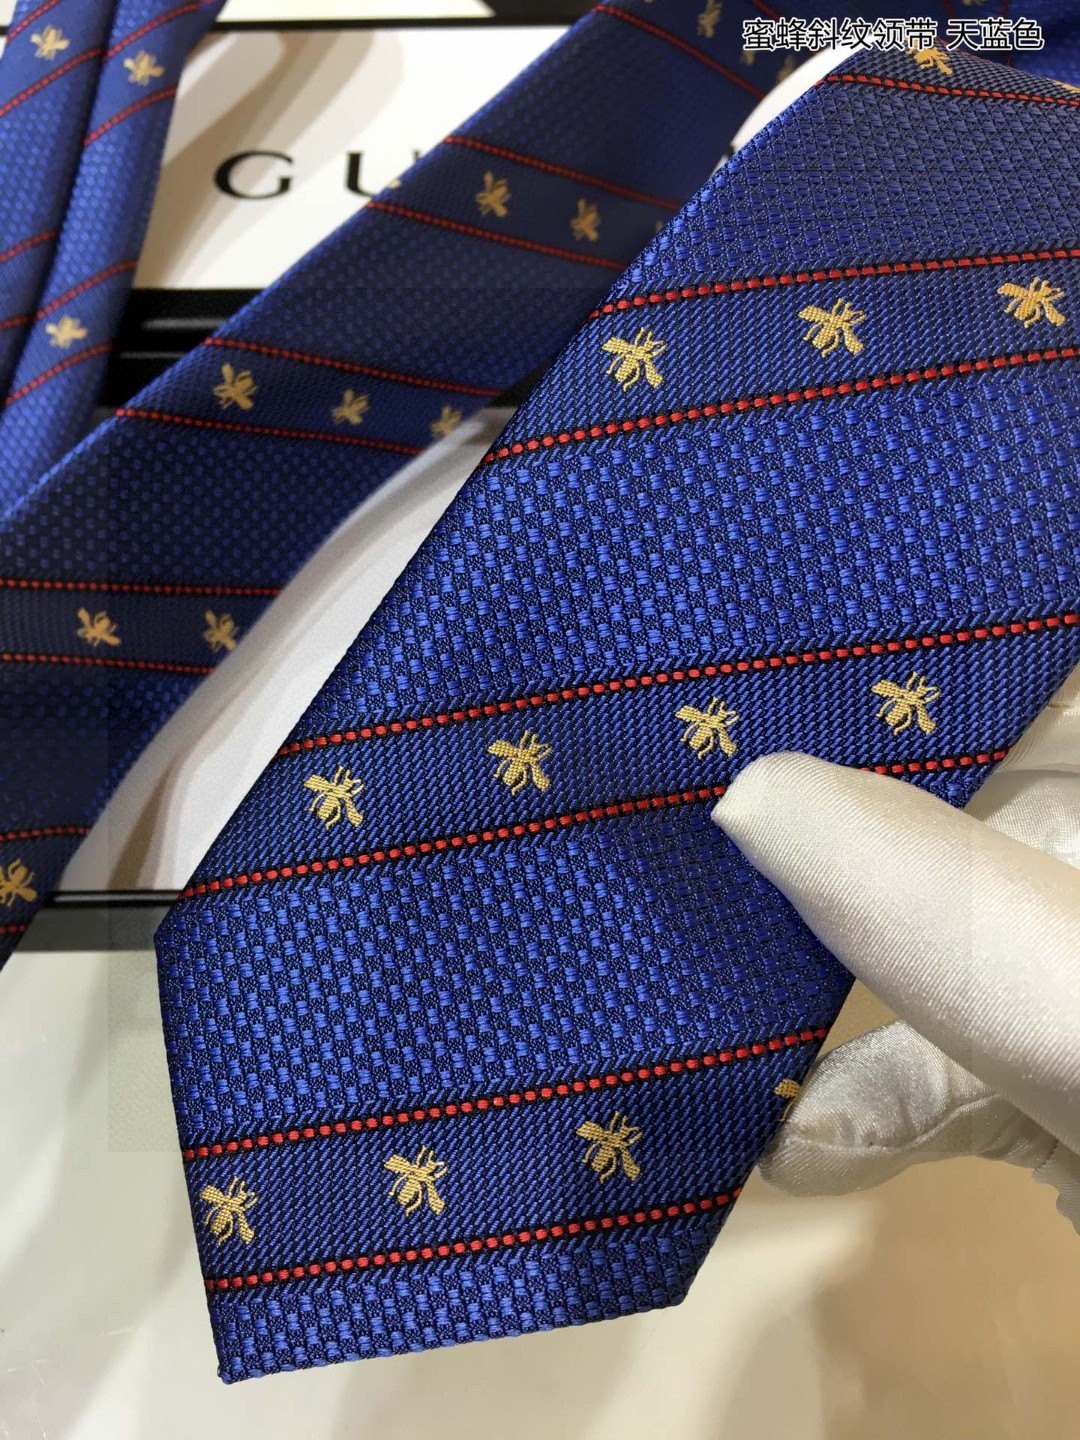 上新G家男士领带系列蜜蜂斜纹领带稀有展现精湛手工与时尚优雅的理想选择这款领带将标志性的主题动物小蜜蜂与斜